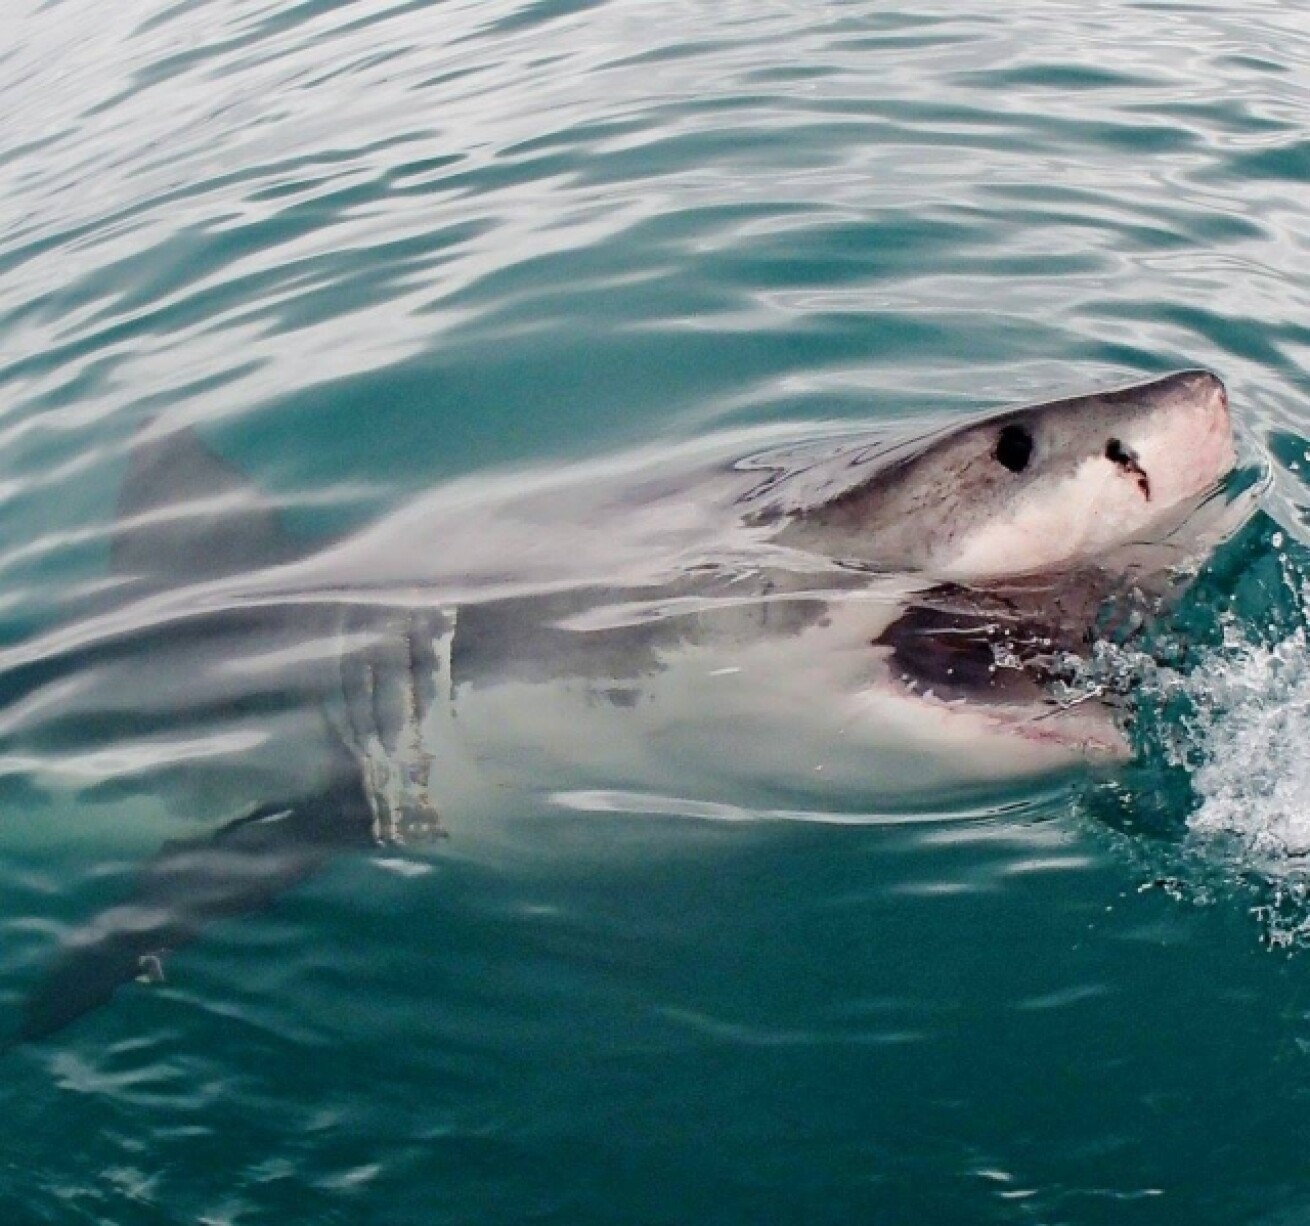 Iflyer 人食いザメ 巨大ホオジロザメに襲われたオーストラリアのサーファー サーフボードをサメの口に押し込み顔面をパンチして助かる